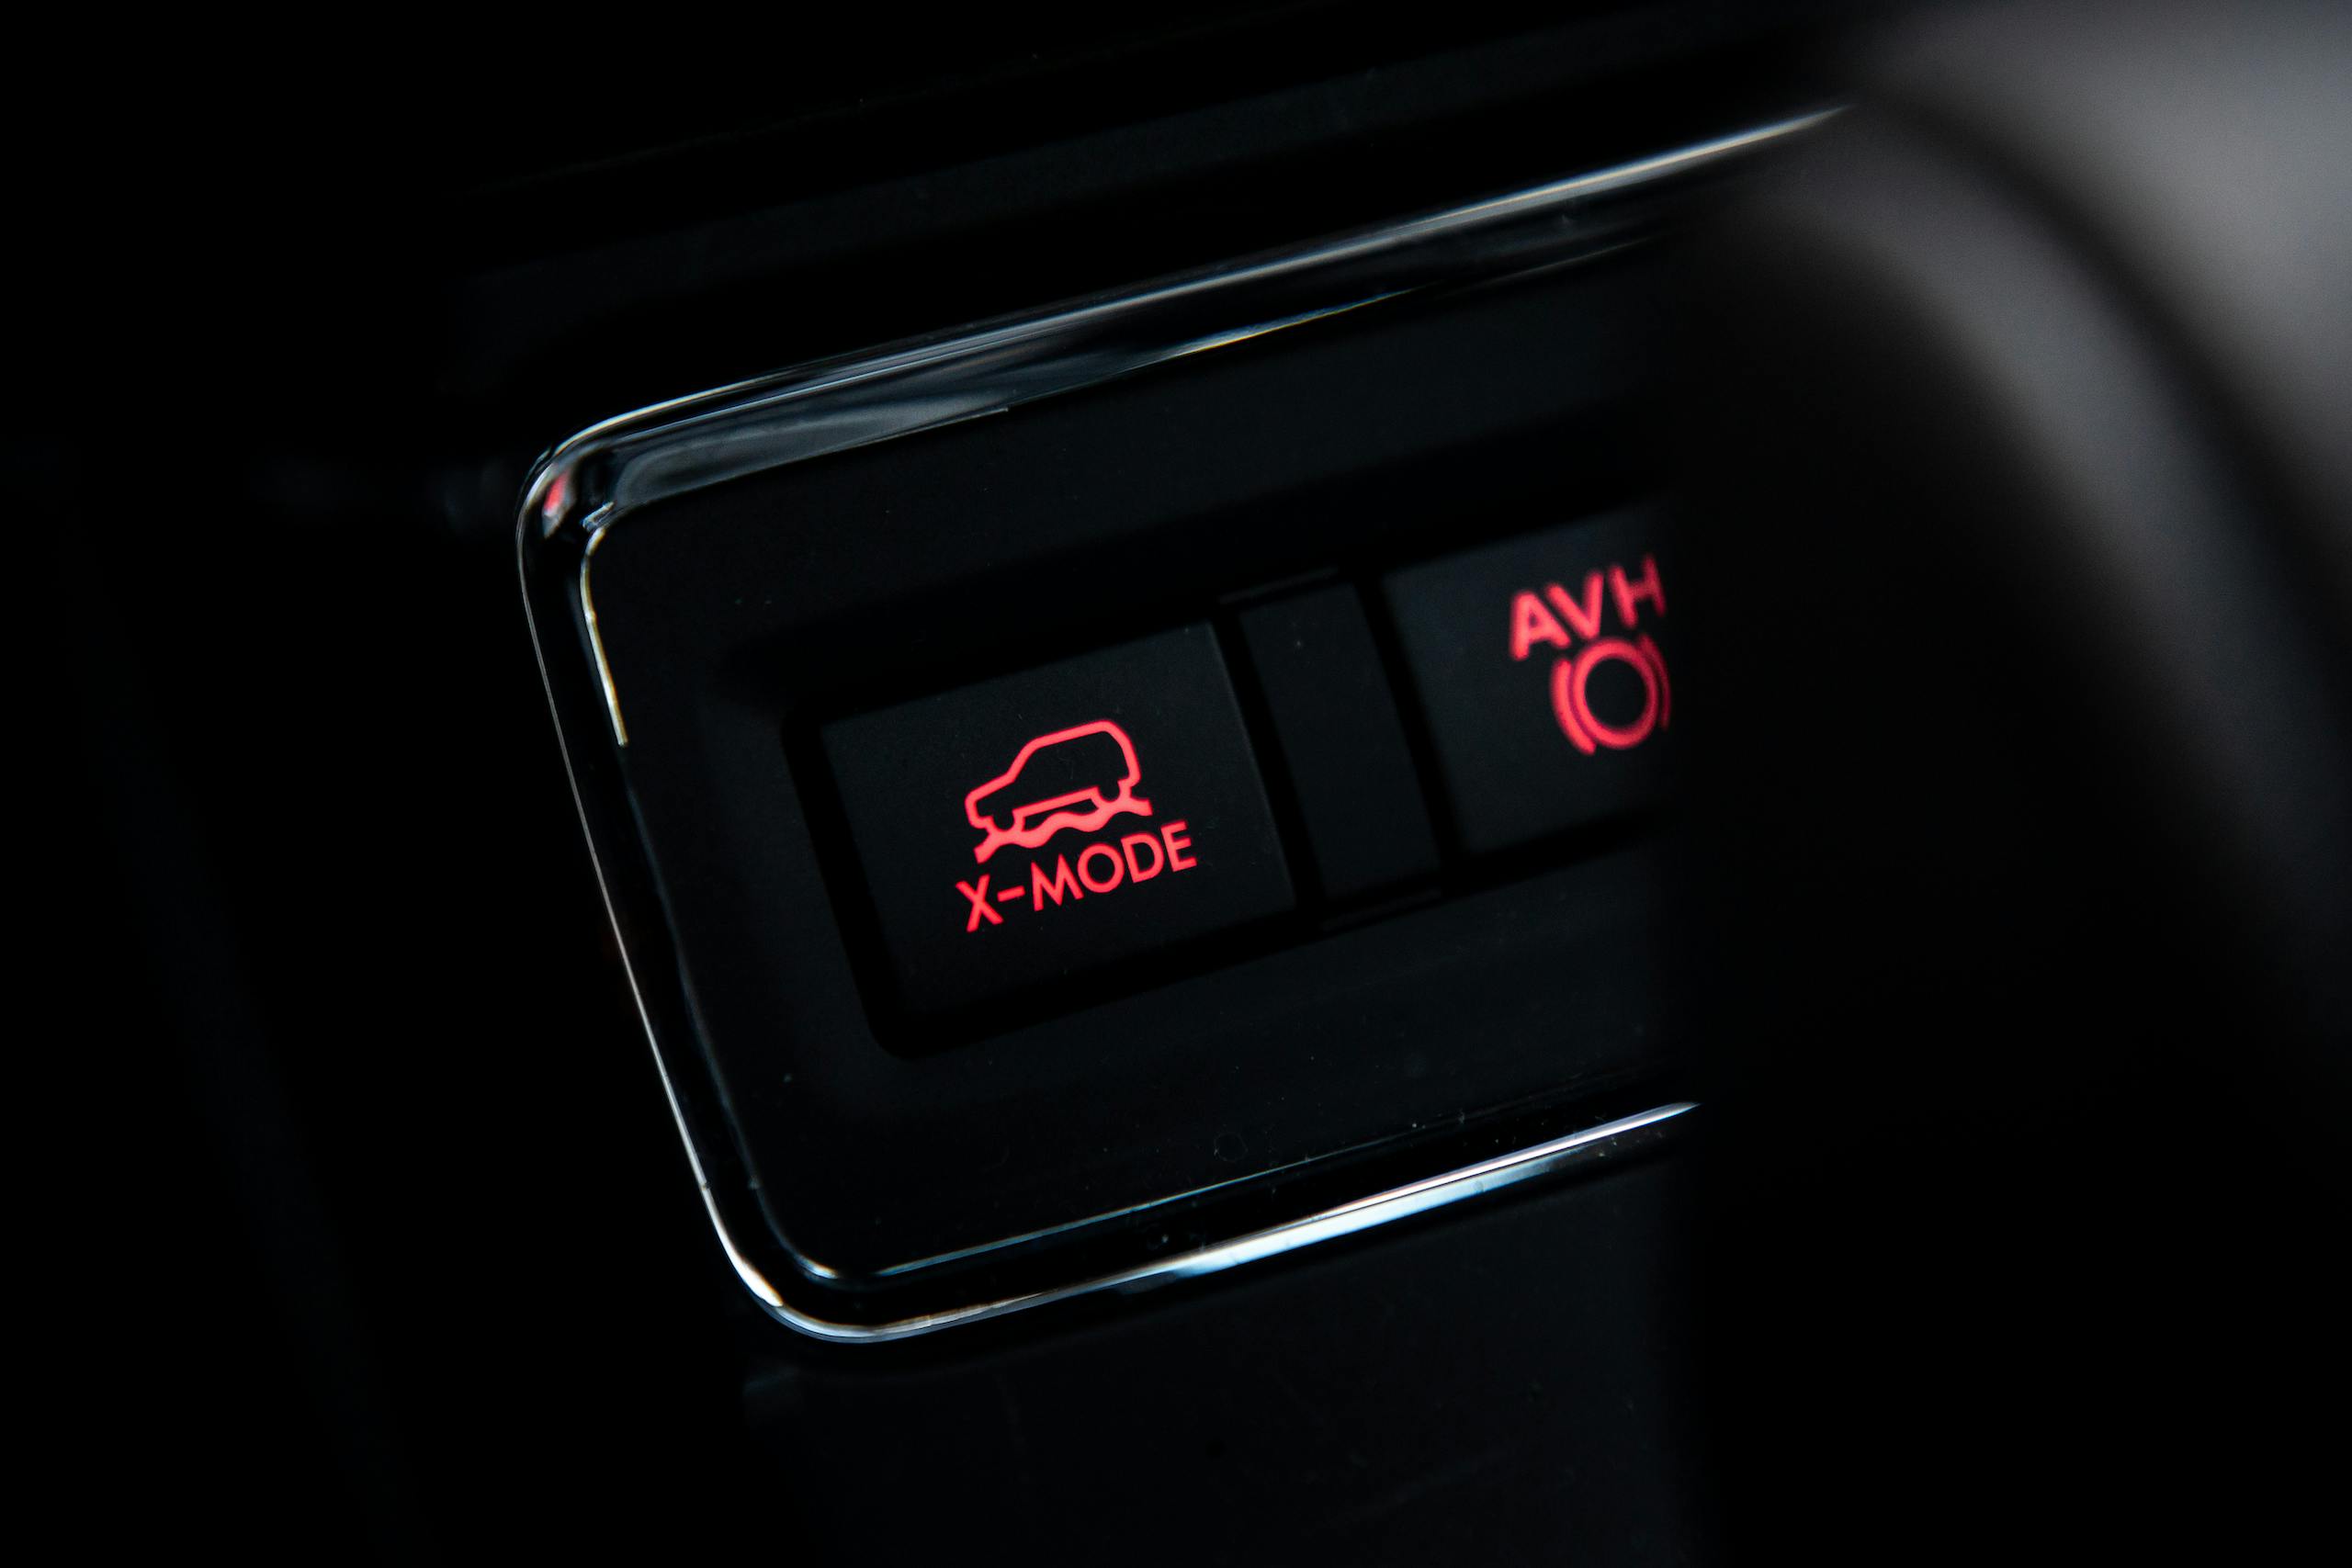 2022 Subaru Ascent Onyx Edition interior x-mode button